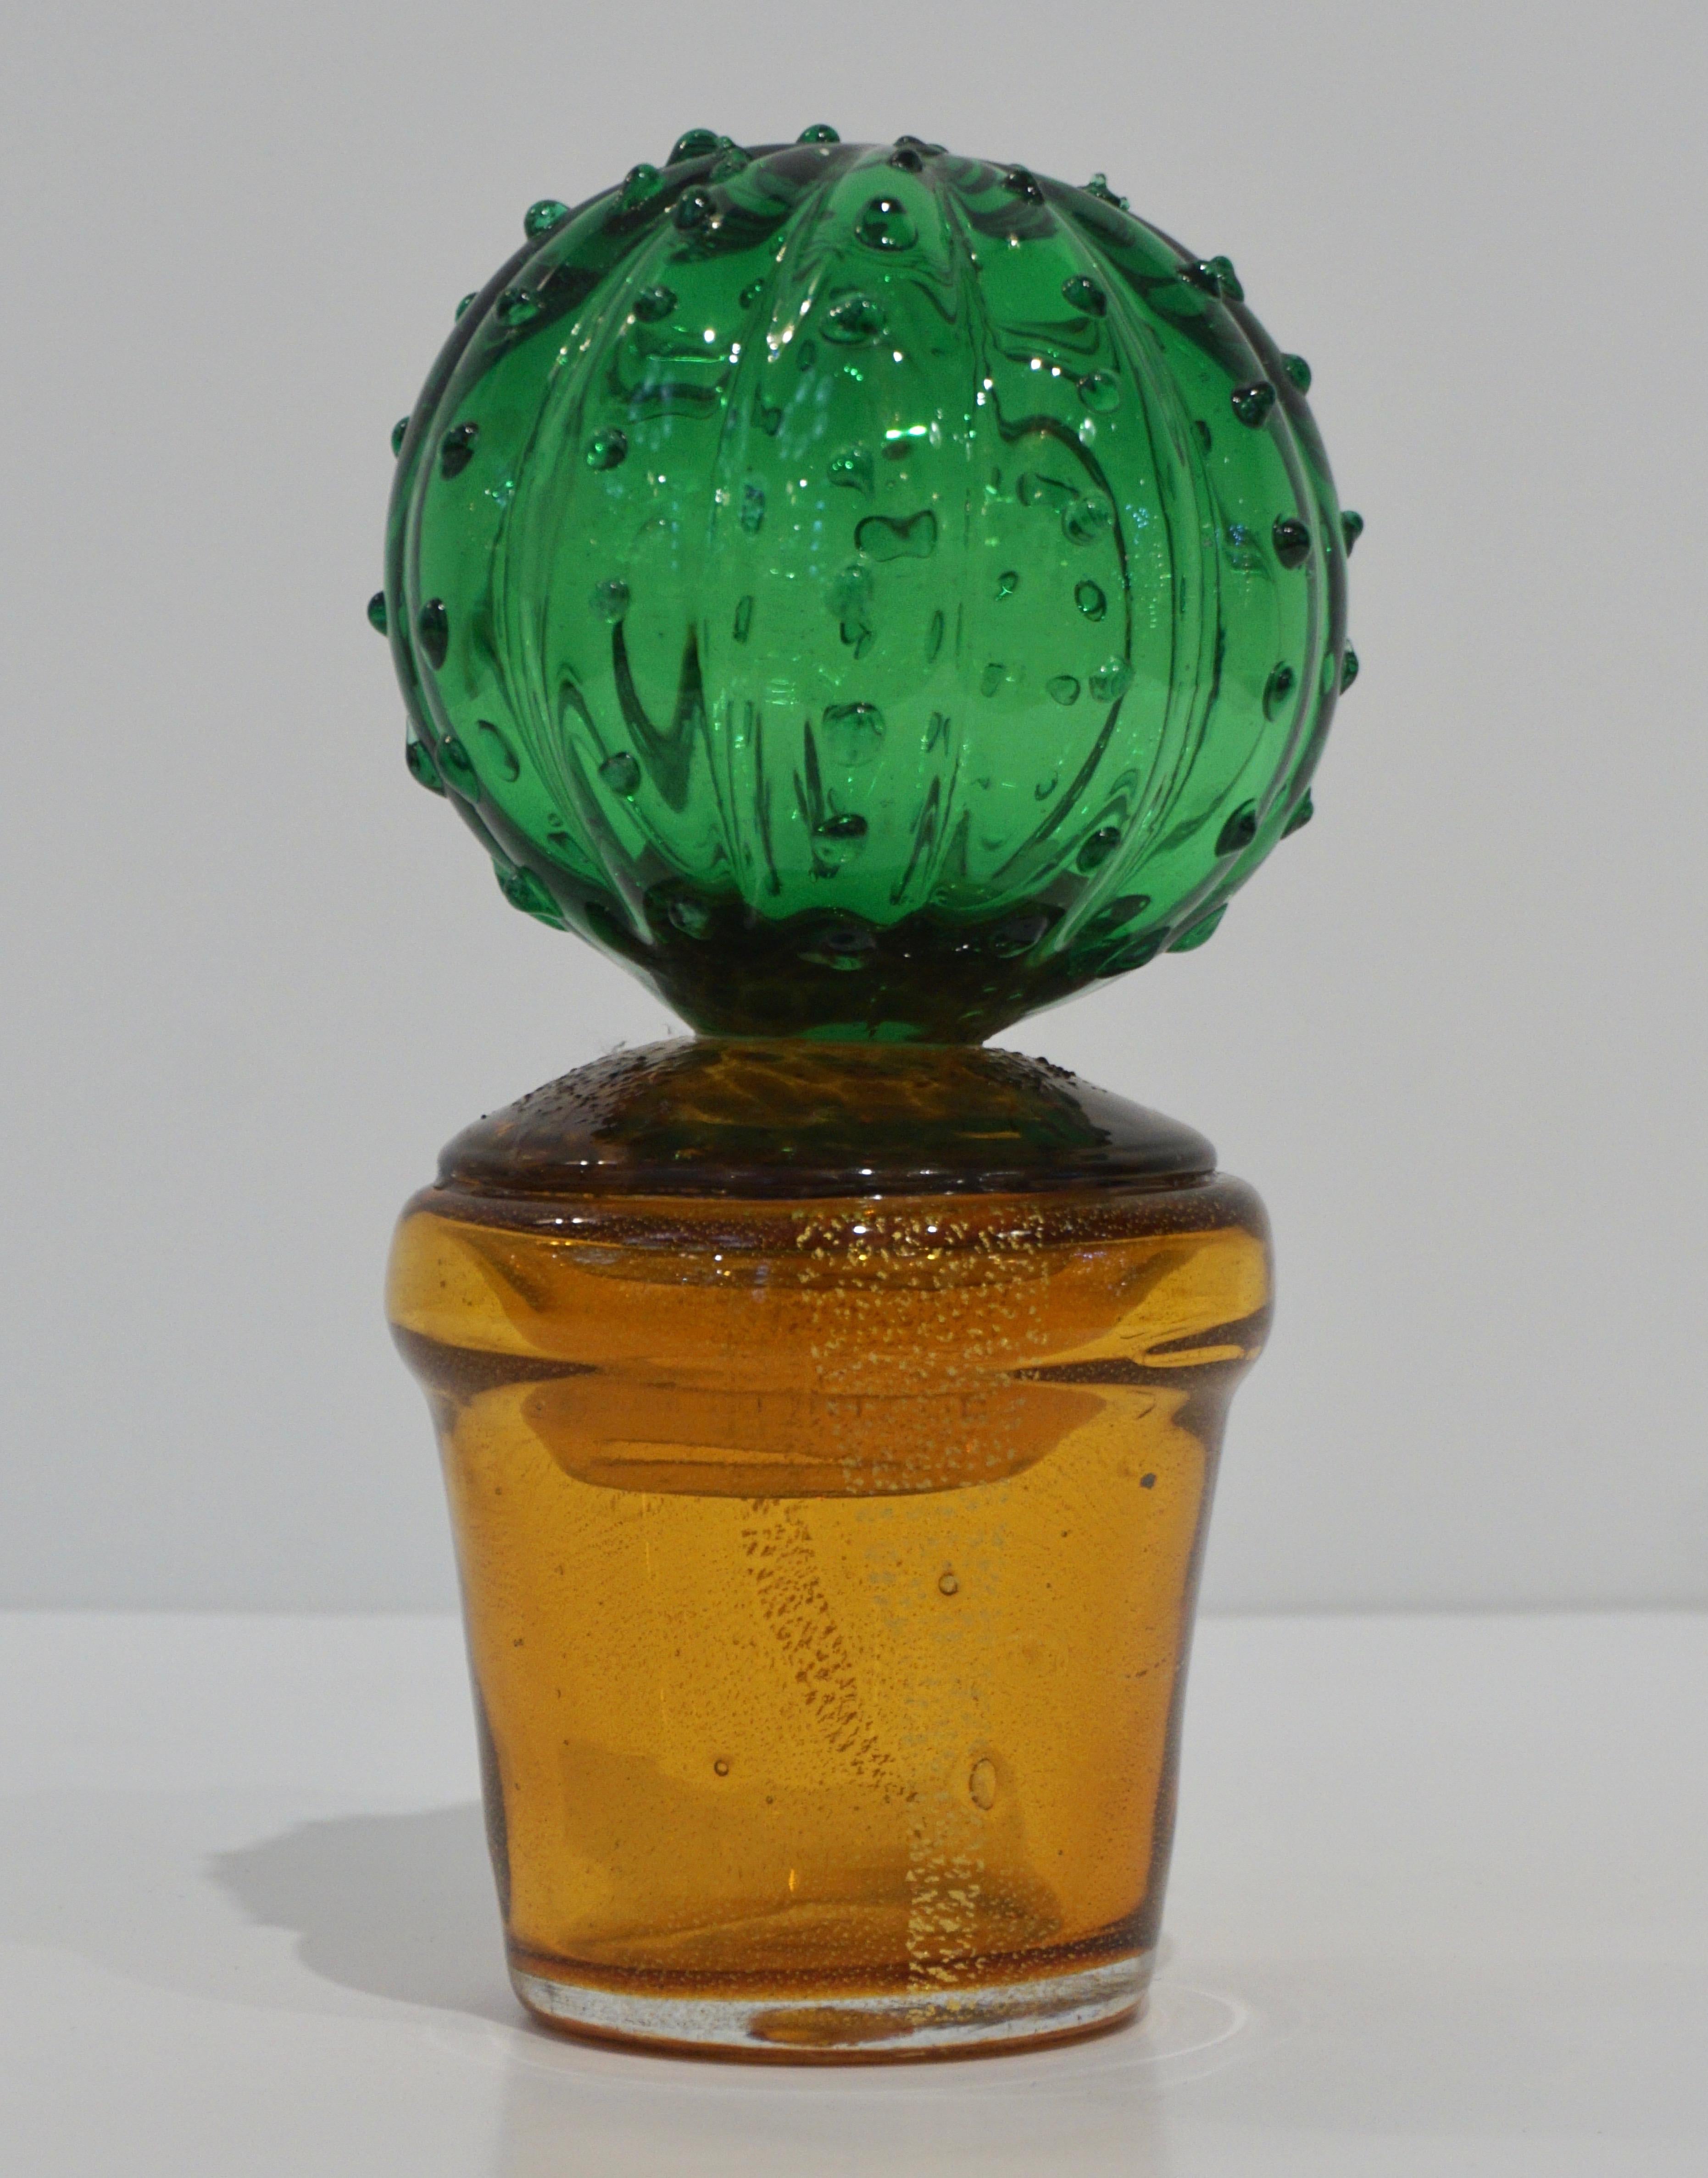 Cactus en verre vénitien de collection des années 1990, entièrement fabriqué à la main à Murano, au design moderne et minimaliste, soufflé par Formia, de forme organique et moderniste, en verre de Murano transparent et vif, rehaussé de piquants en